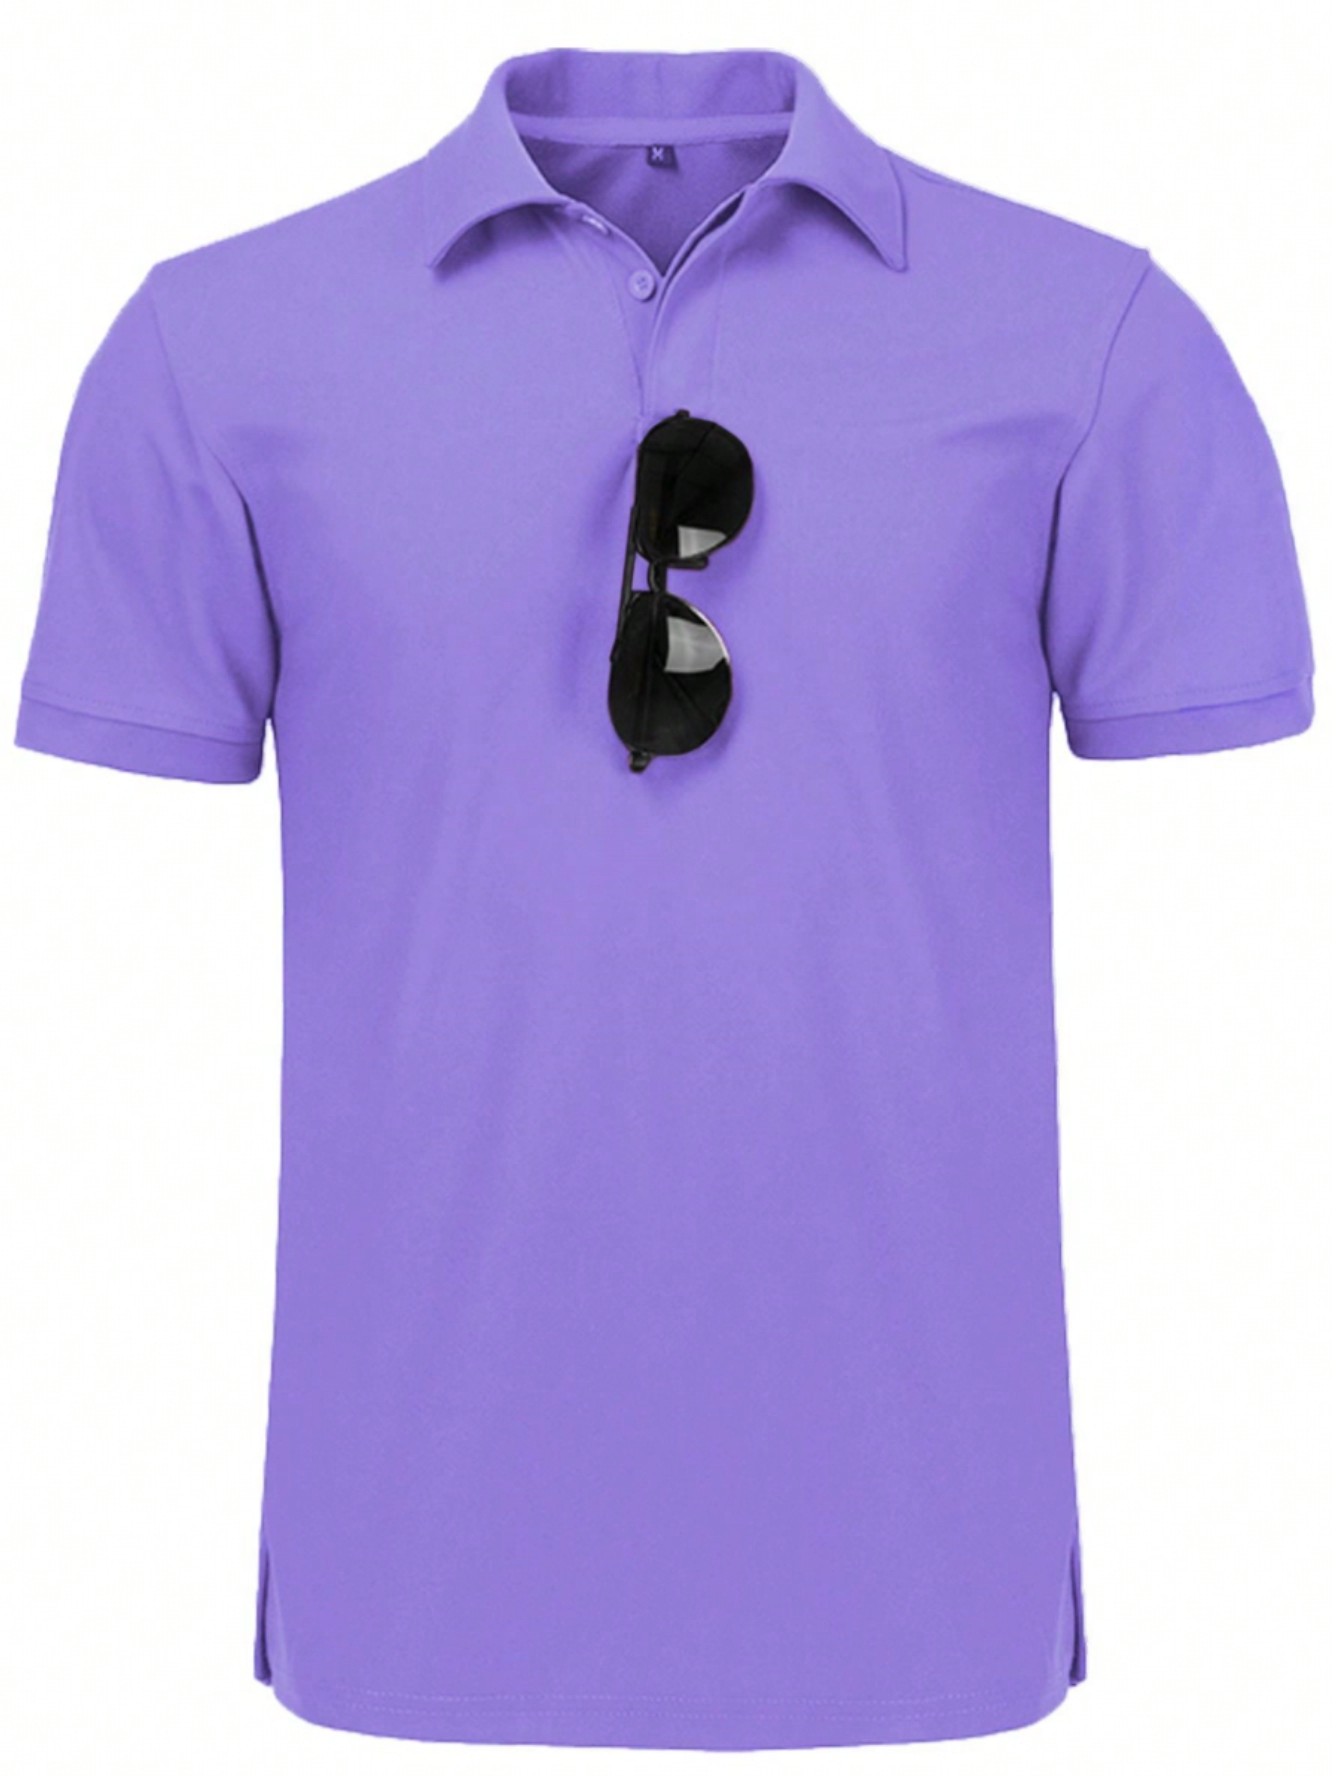 Мужская рубашка поло с коротким рукавом для отдыха, фиолетовый рубашка поло prescott мужская джинс